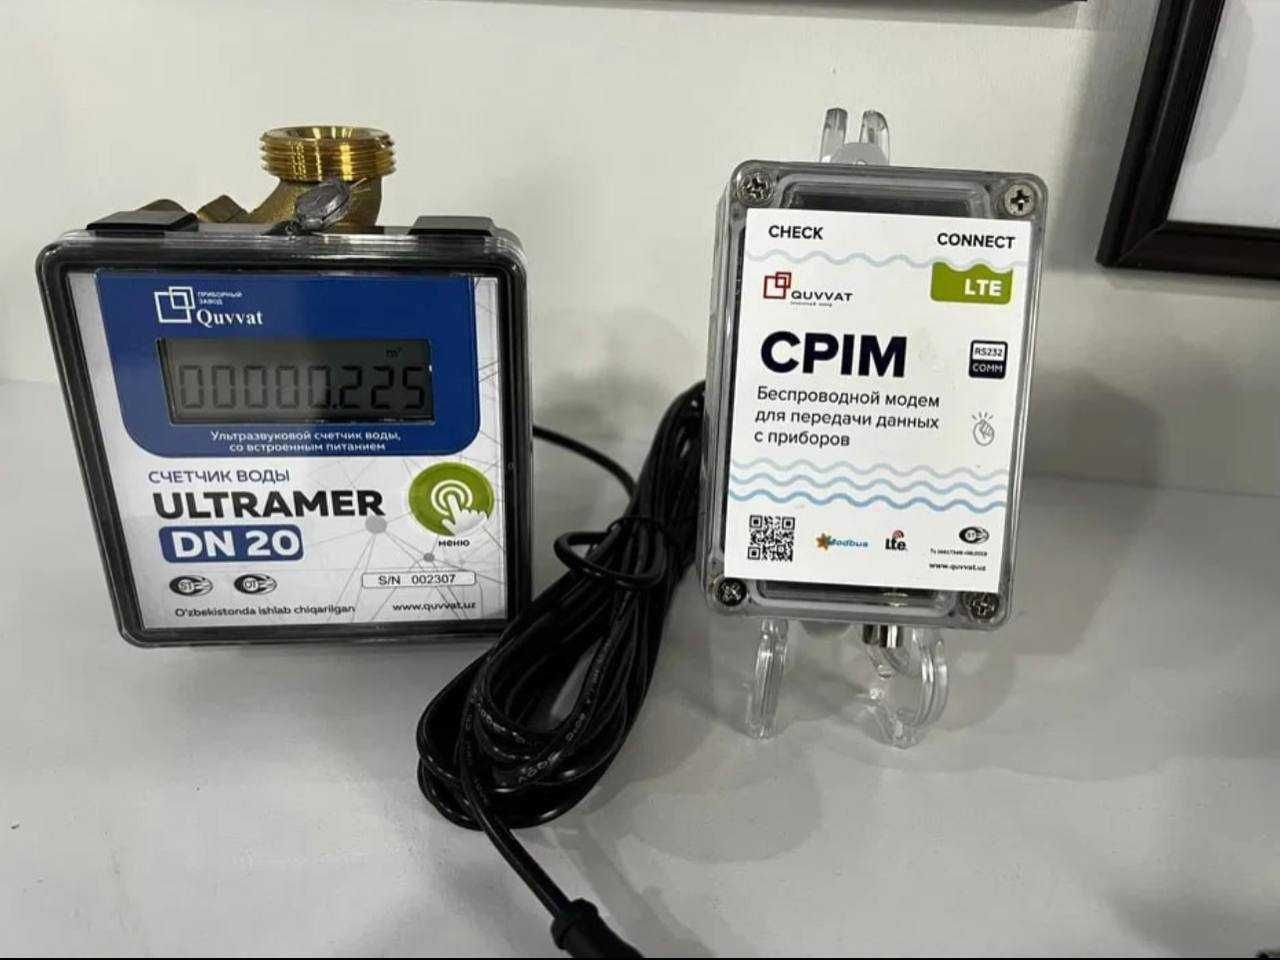 Ultramer DN20 - Modem RS232 LTE komplekt